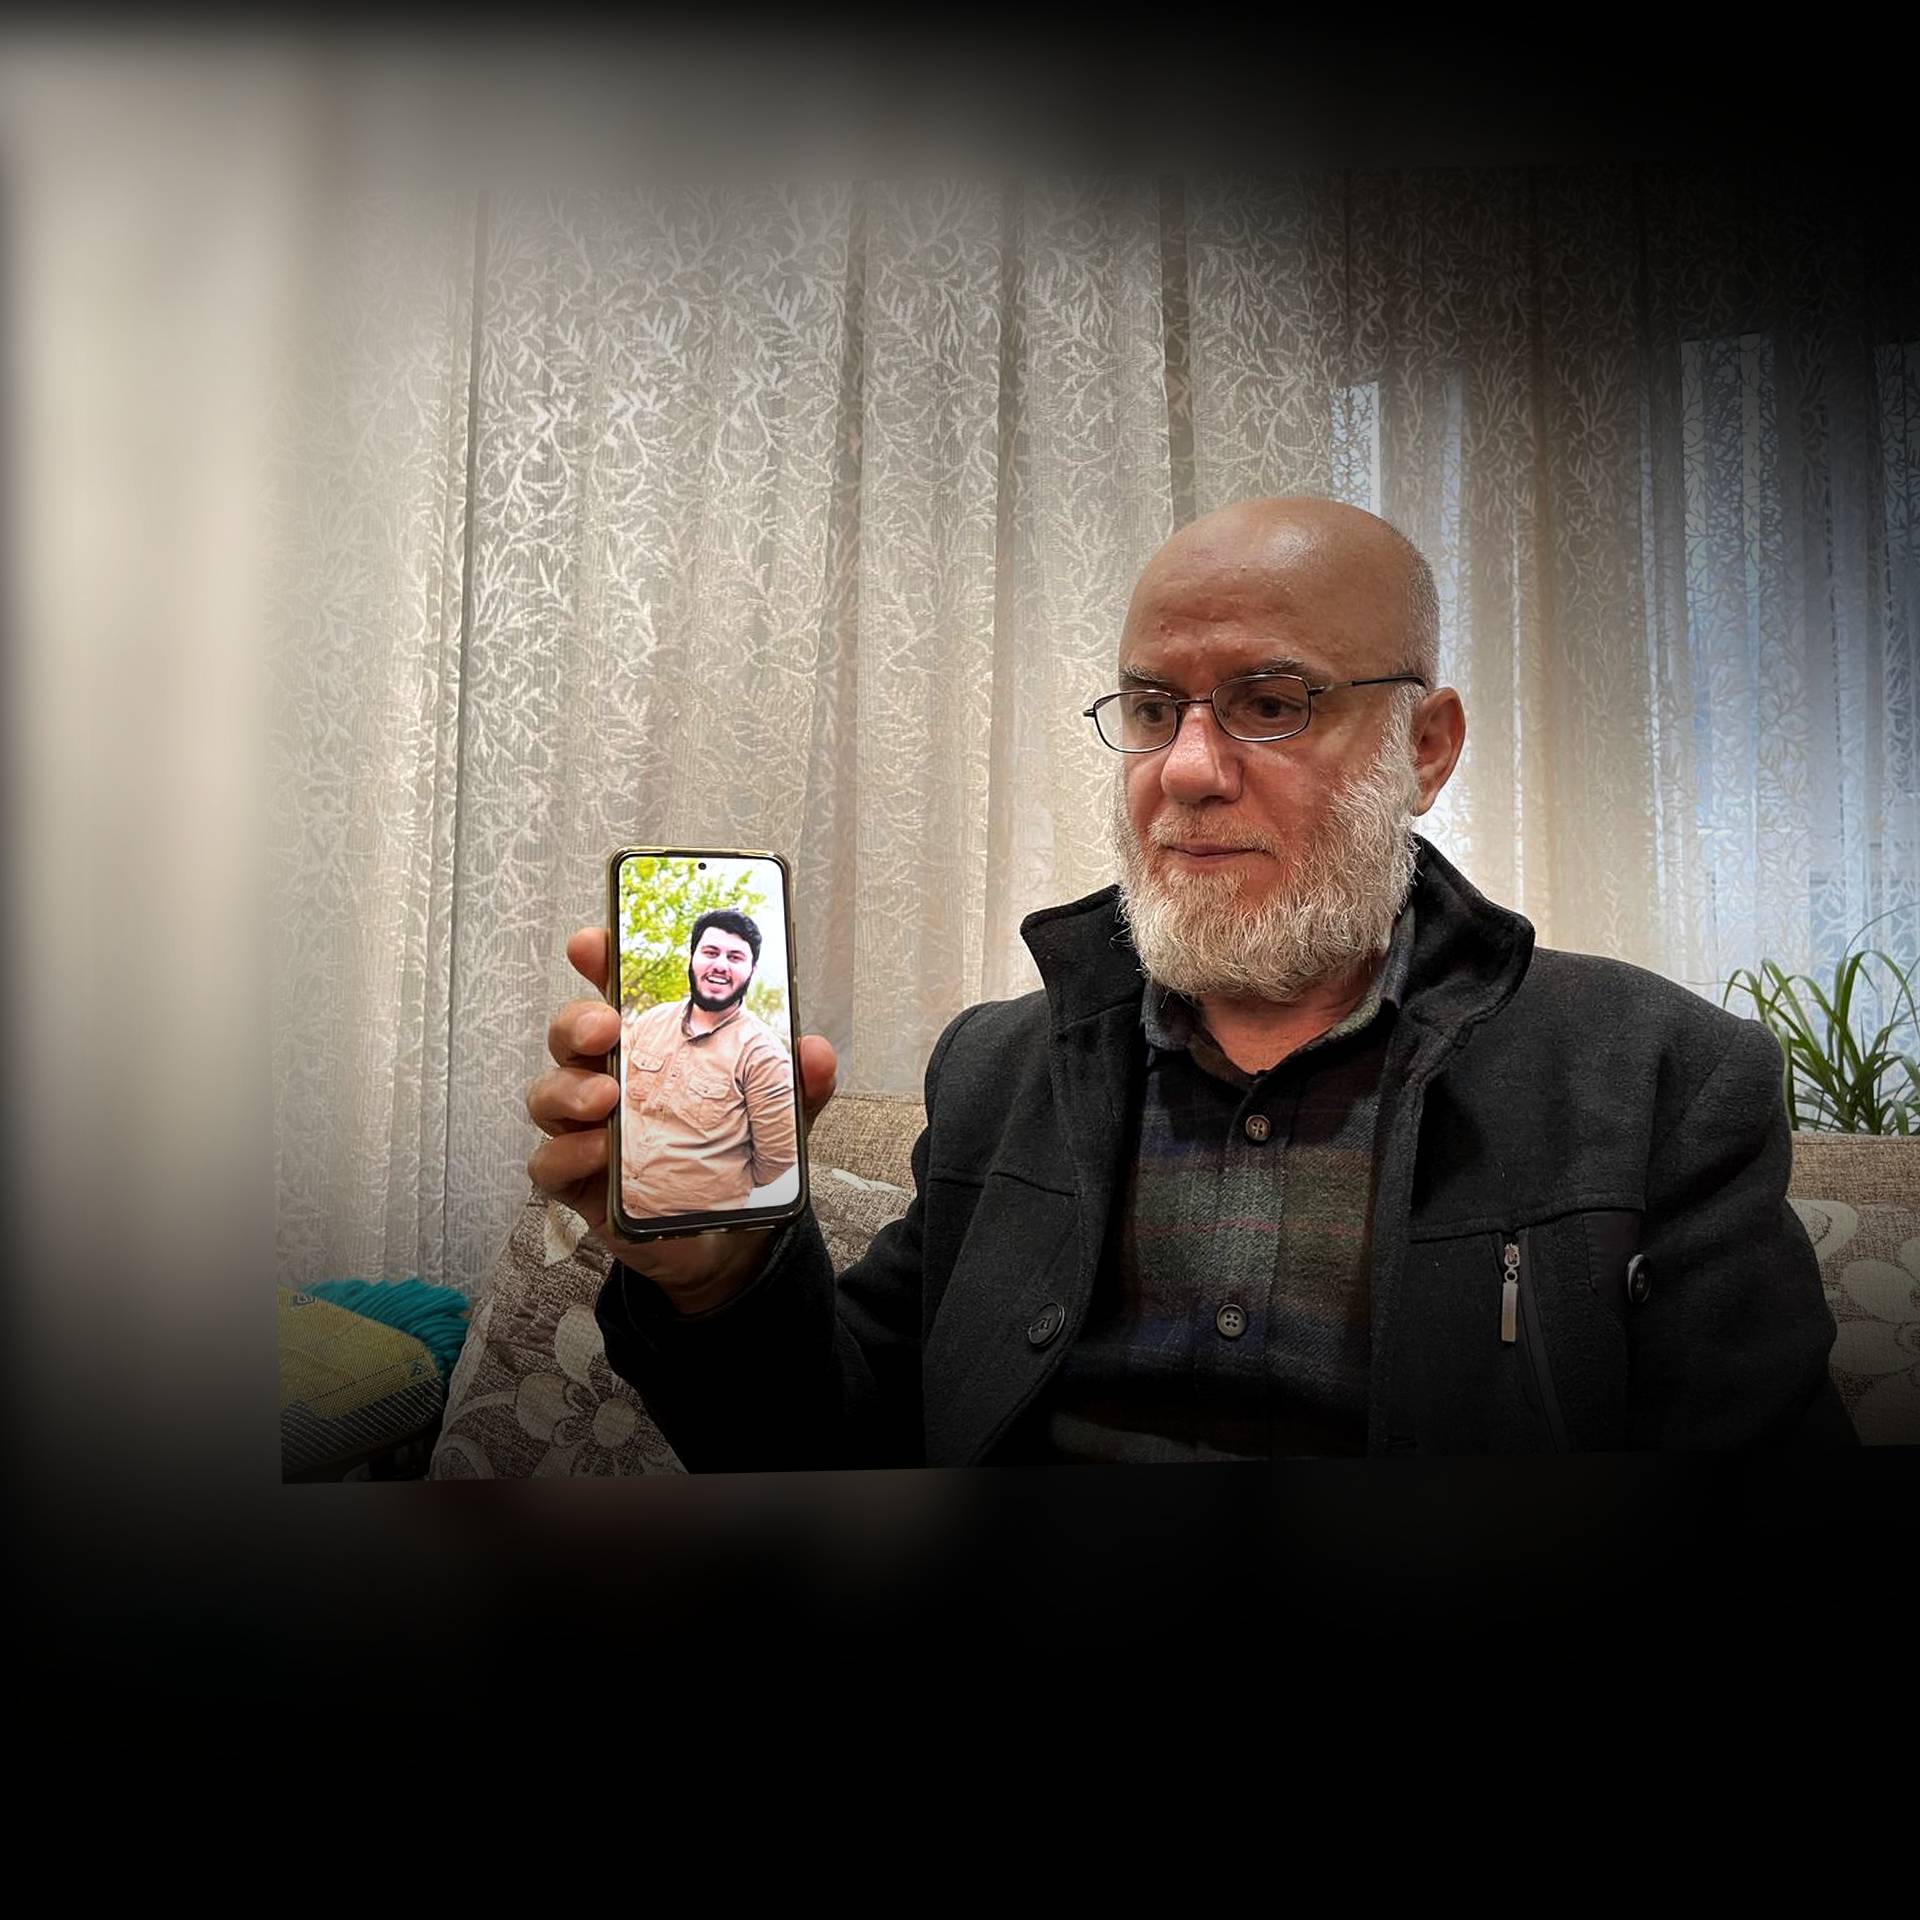 Ojciec (mężczyzna z siwą brodą) pokazuje na telefonie komórkowym zdjęcie syna